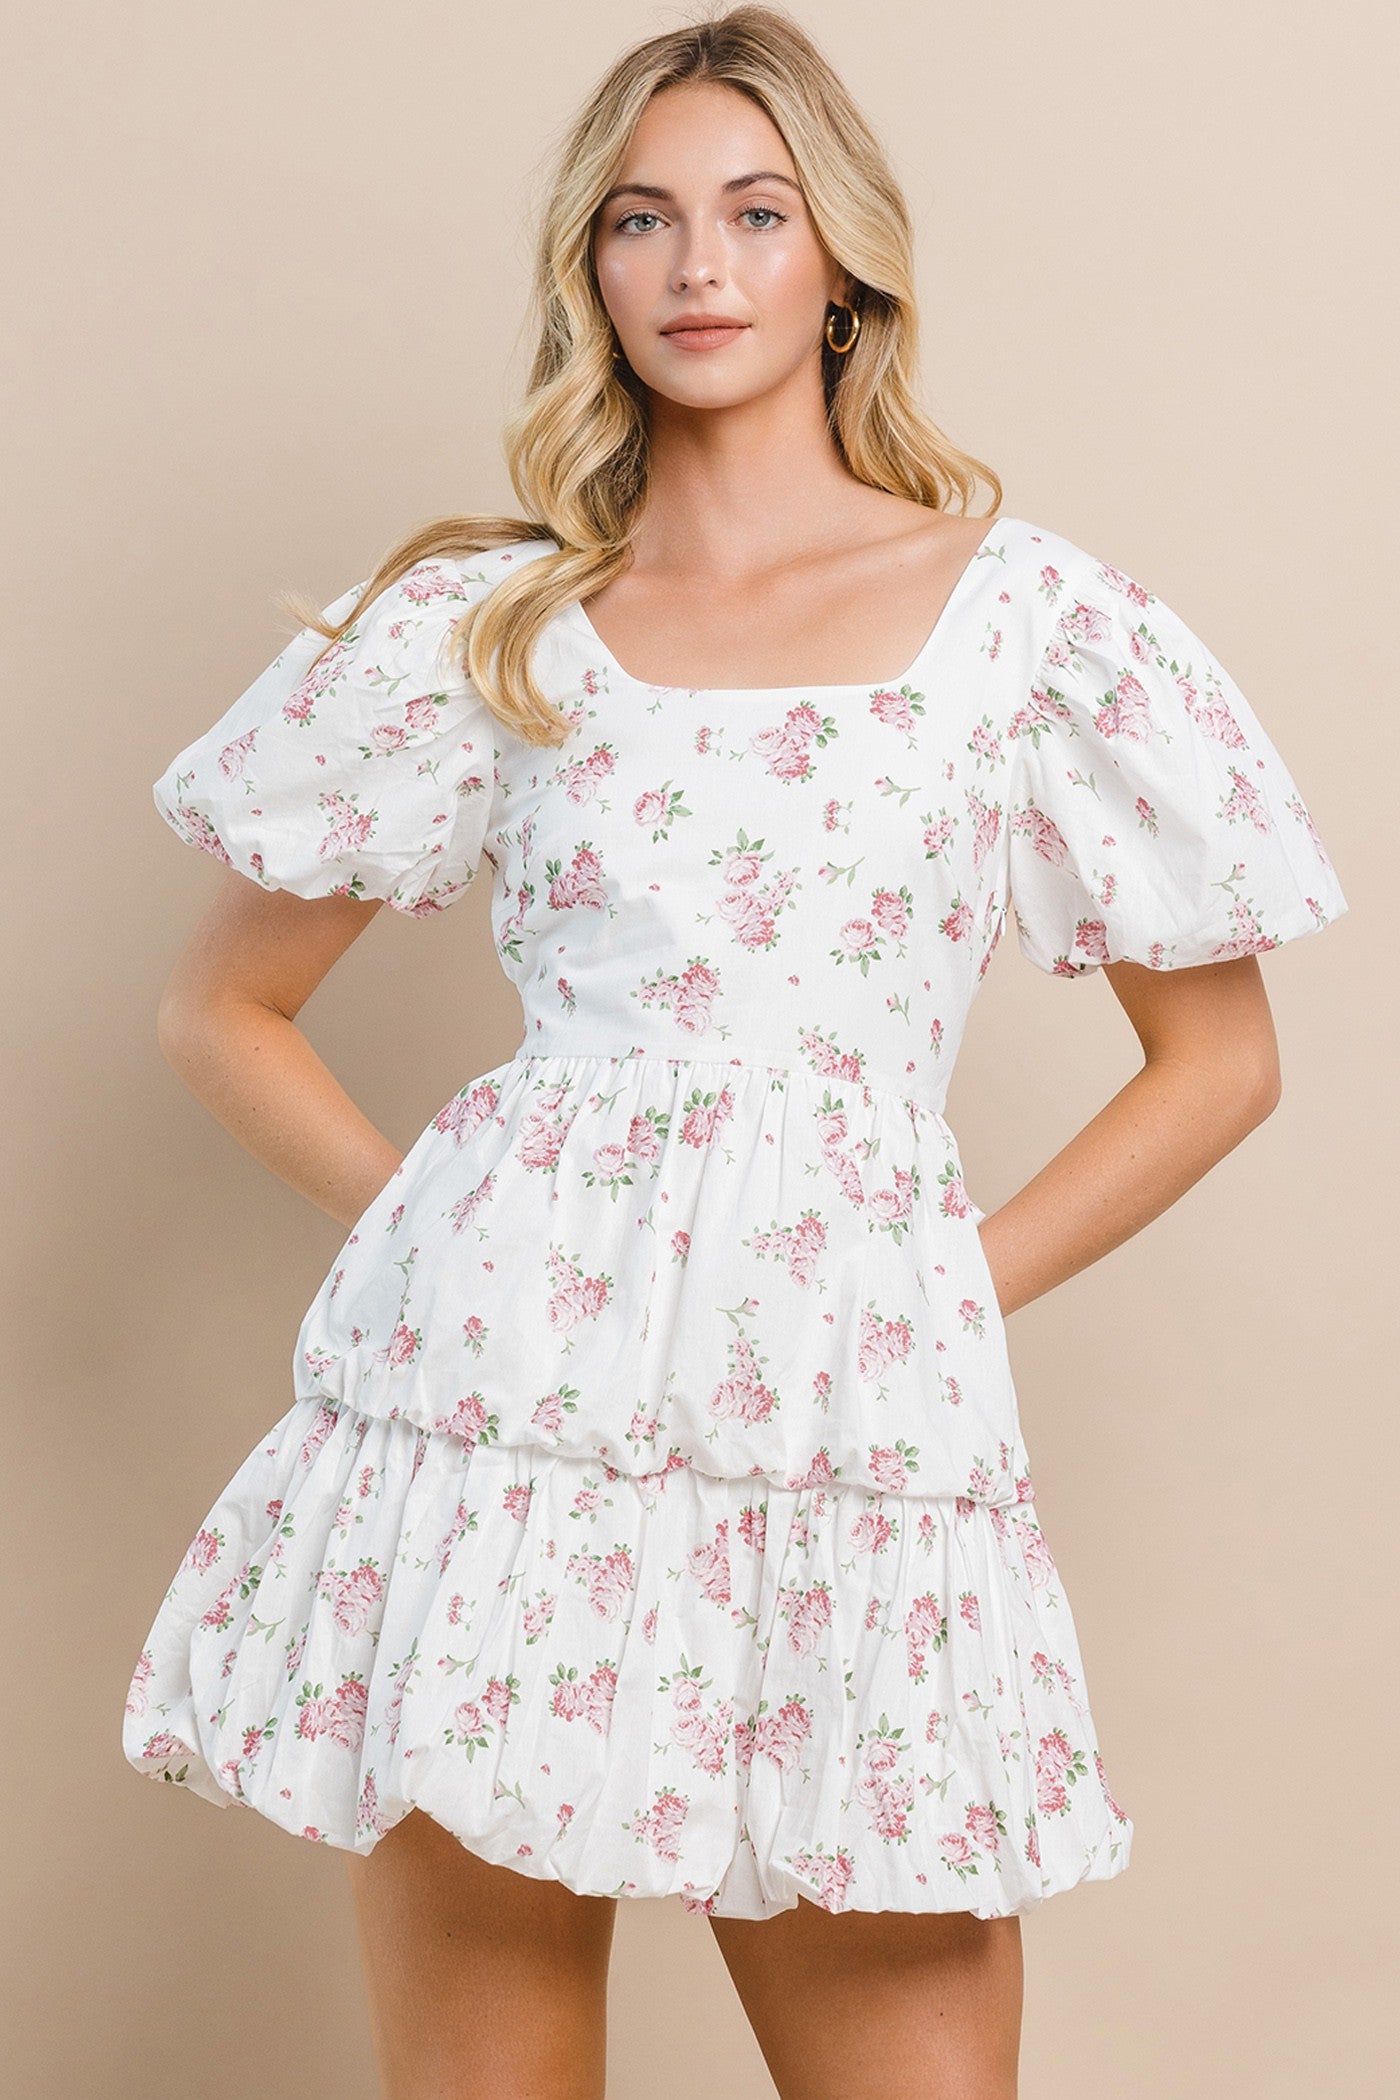 Caroline Floral Dress